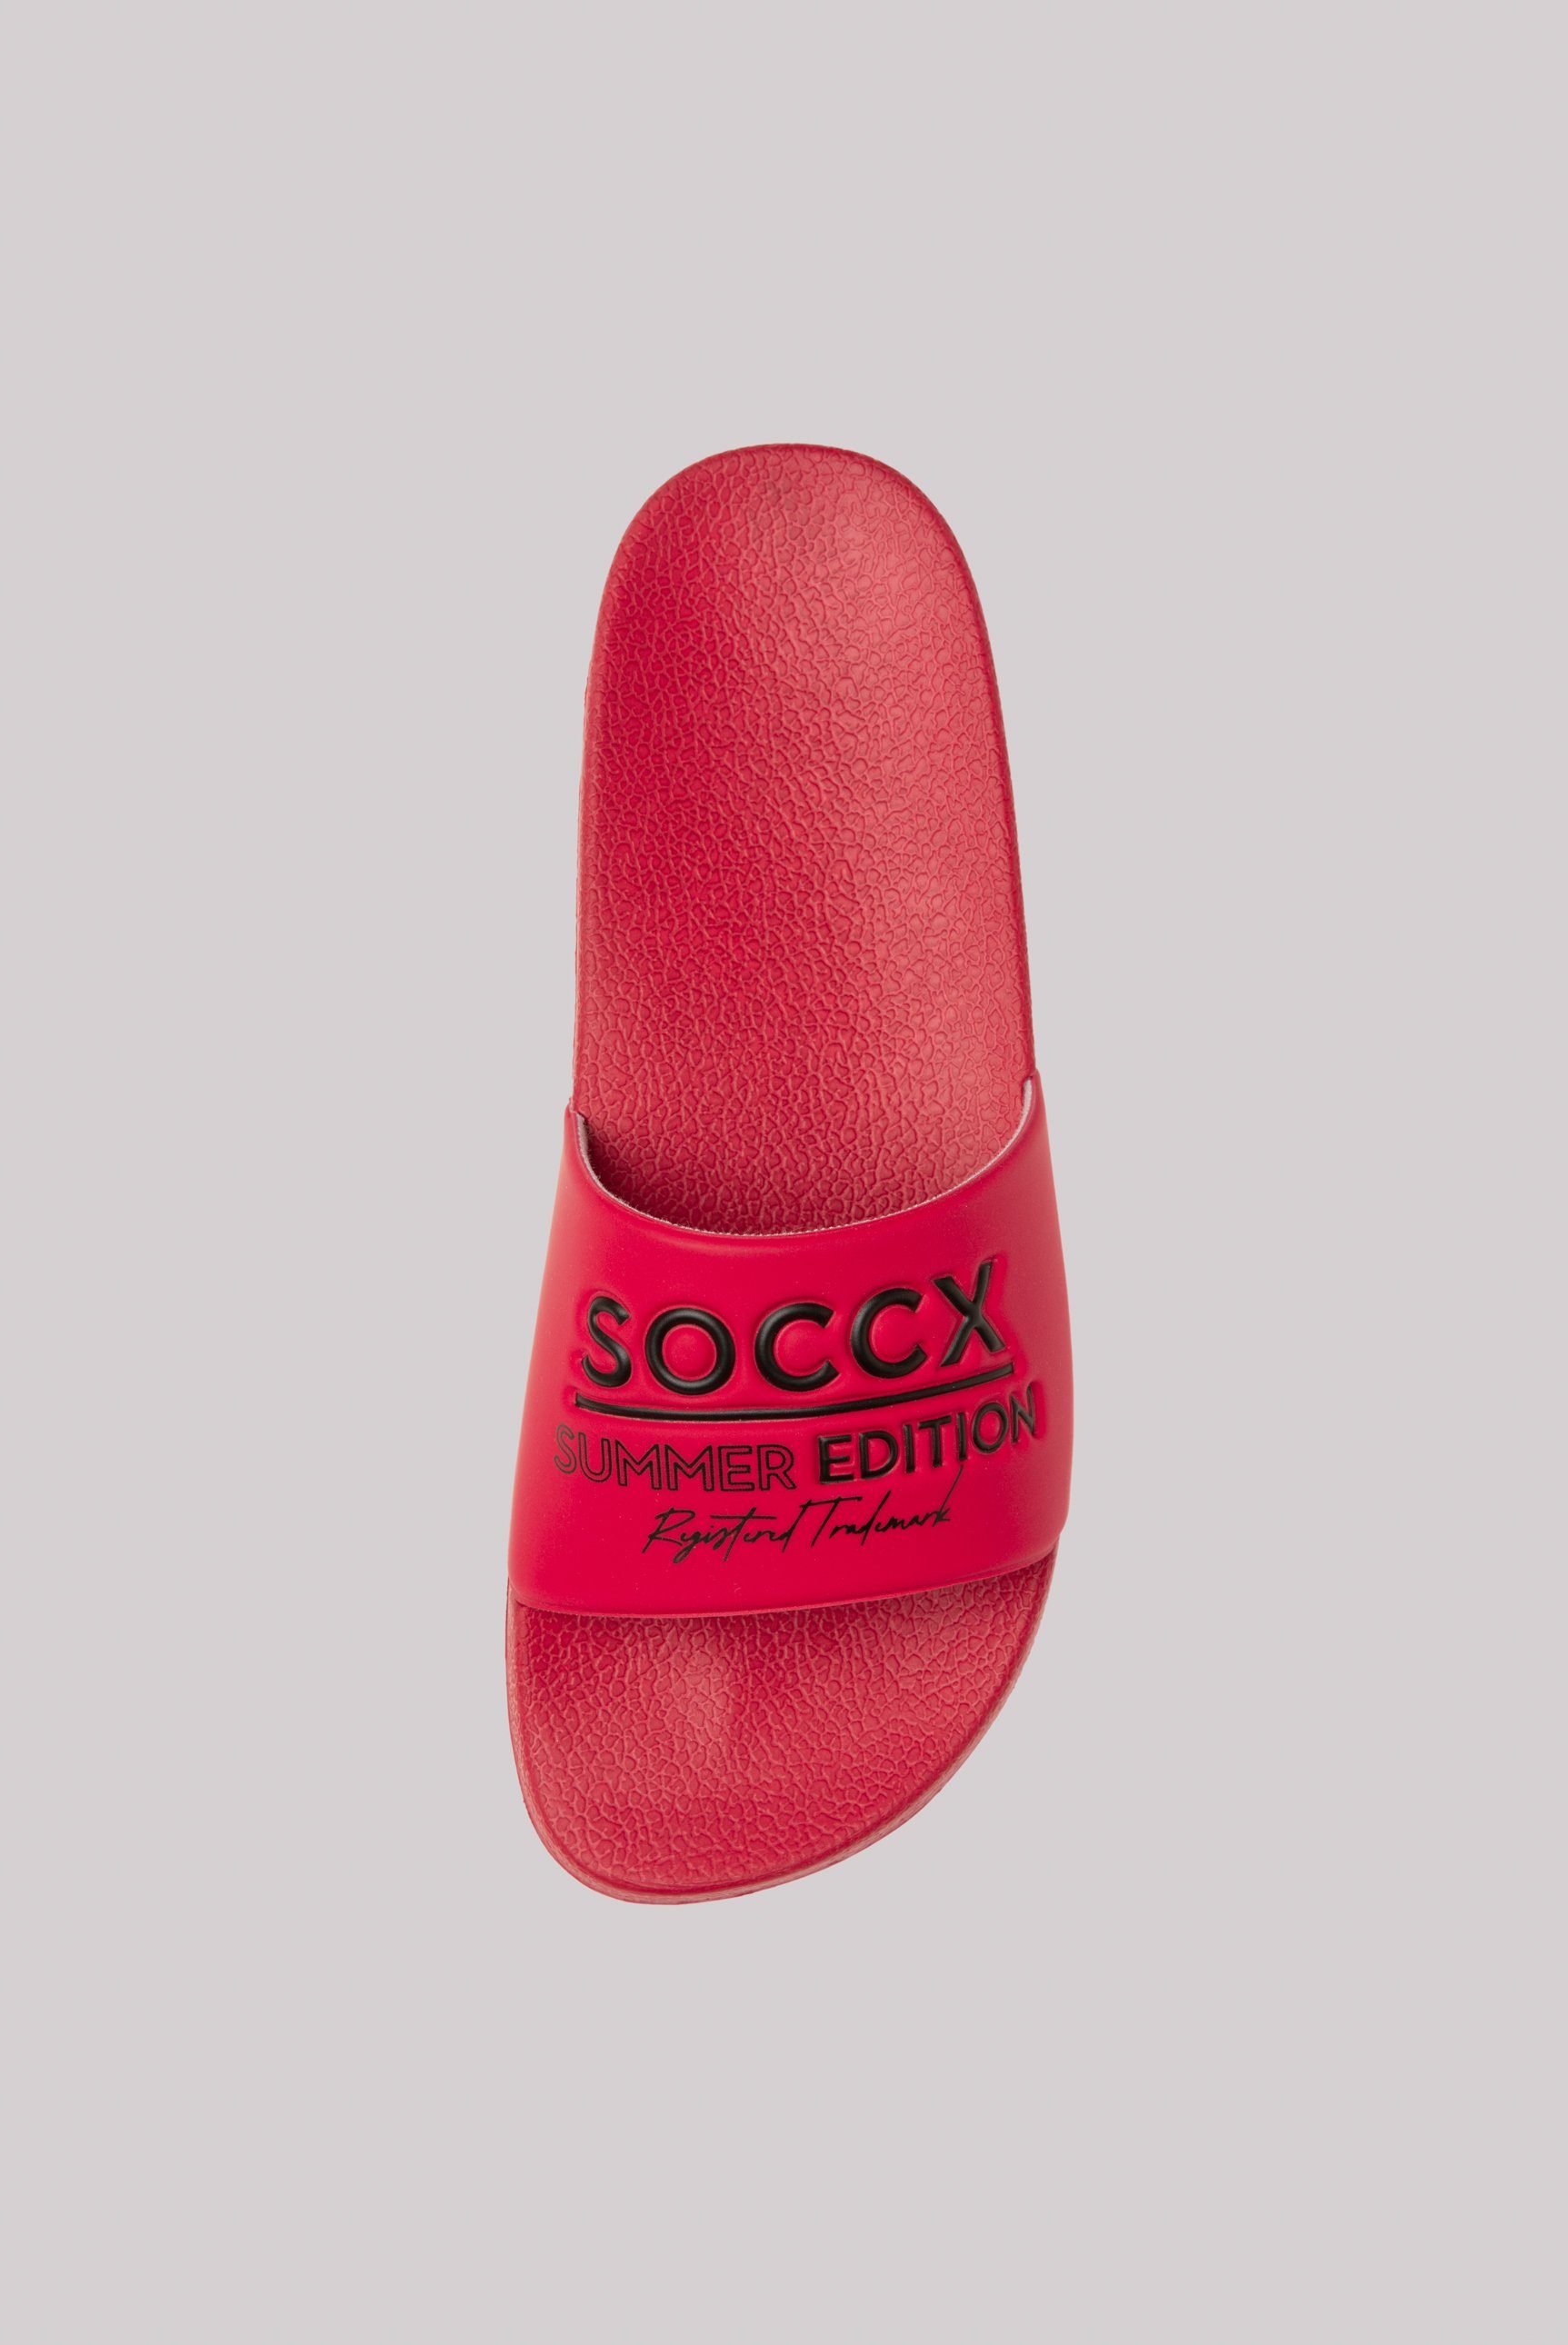 SOCCX Pantolette für Nassräume geeignet